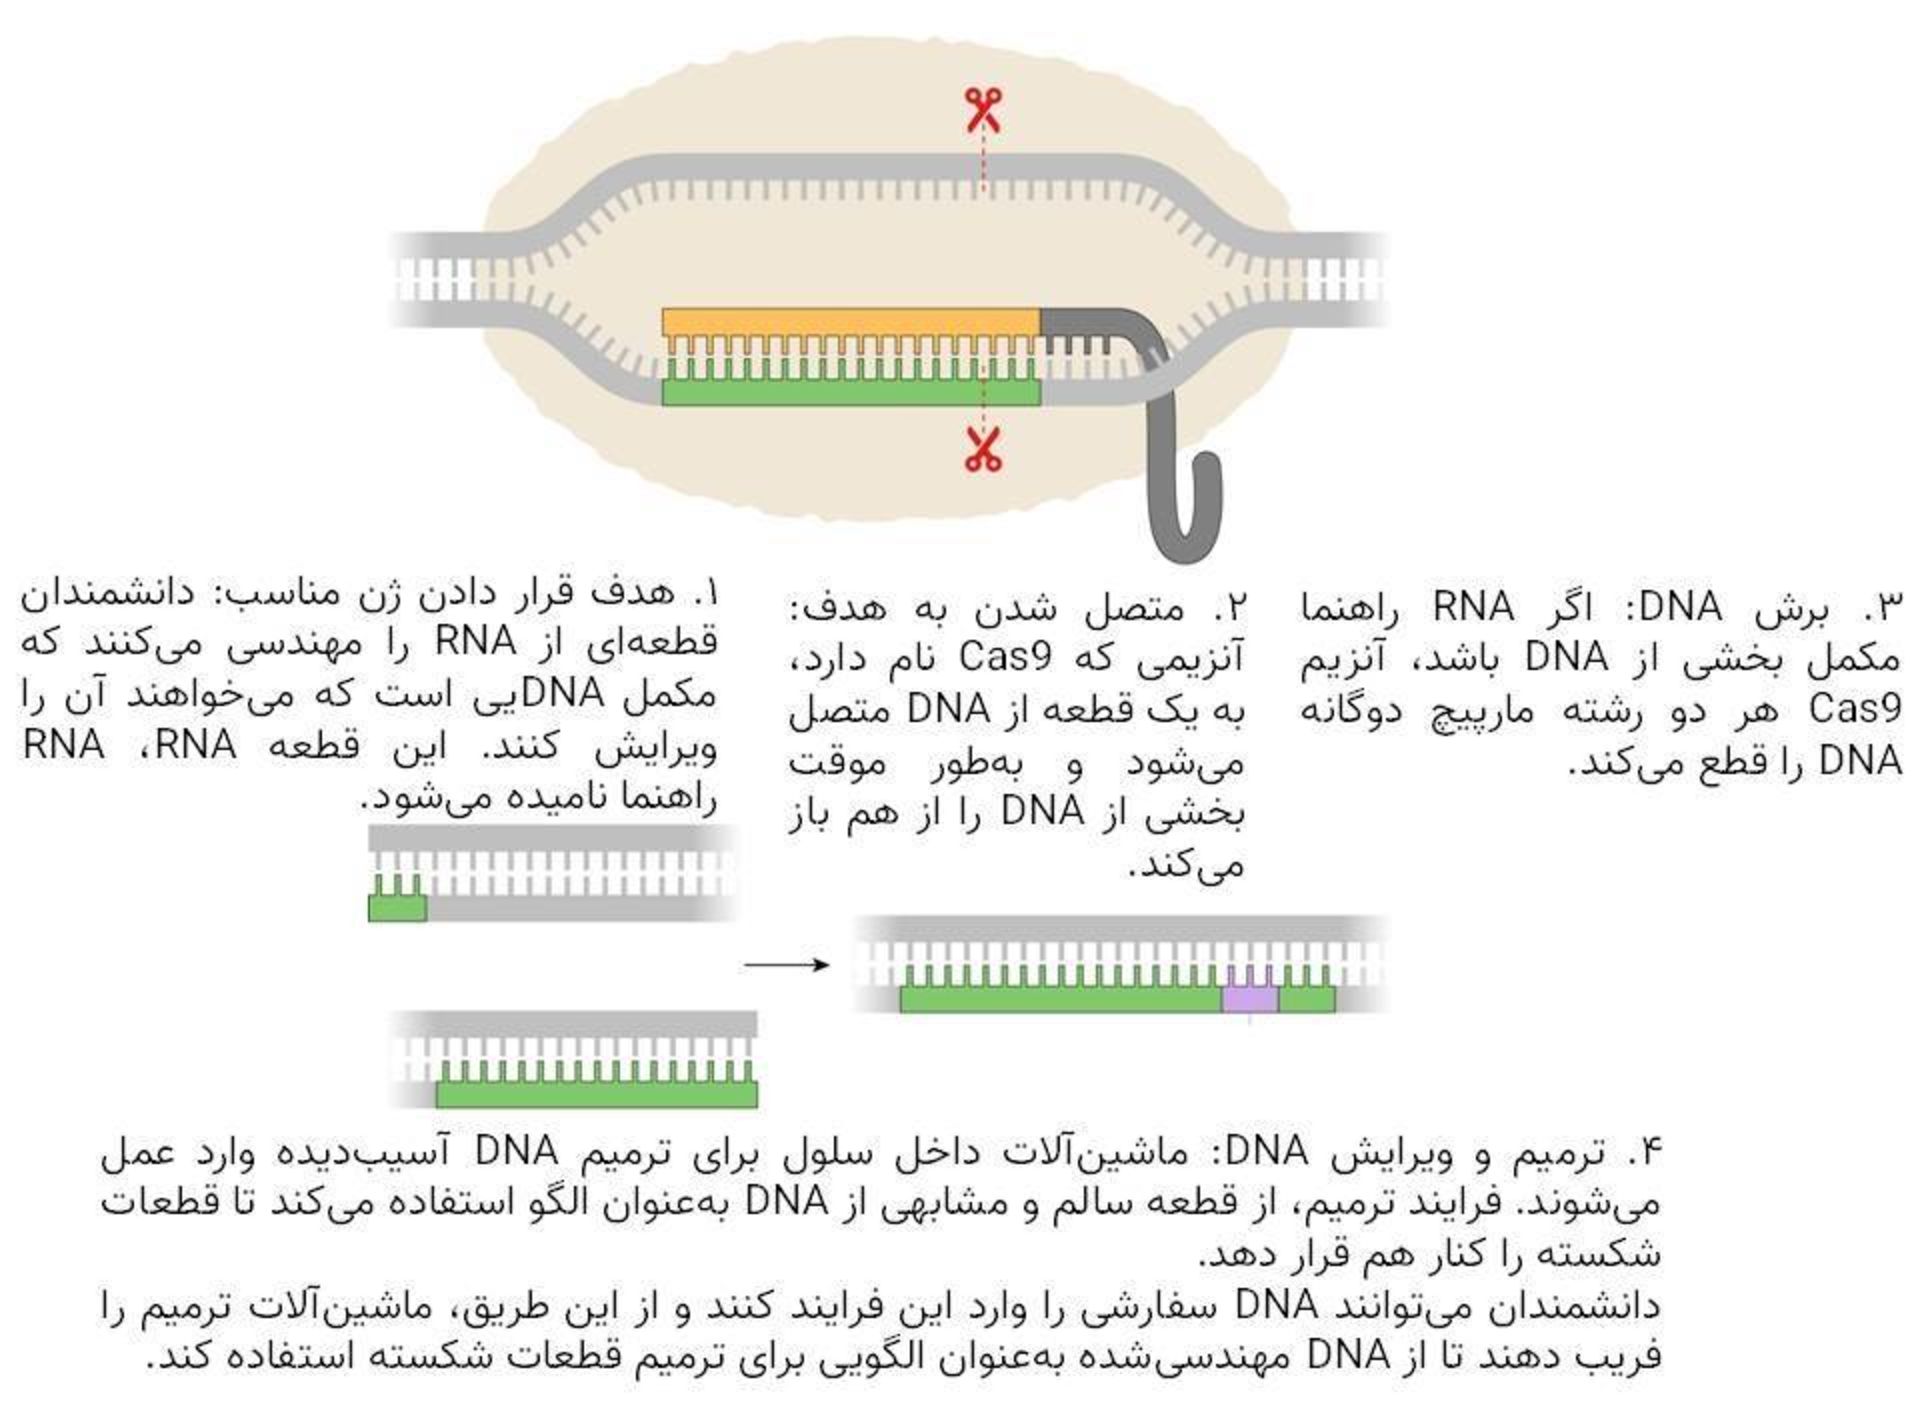 ویرایش ژنوم به کمک کریسپر / CRISPR